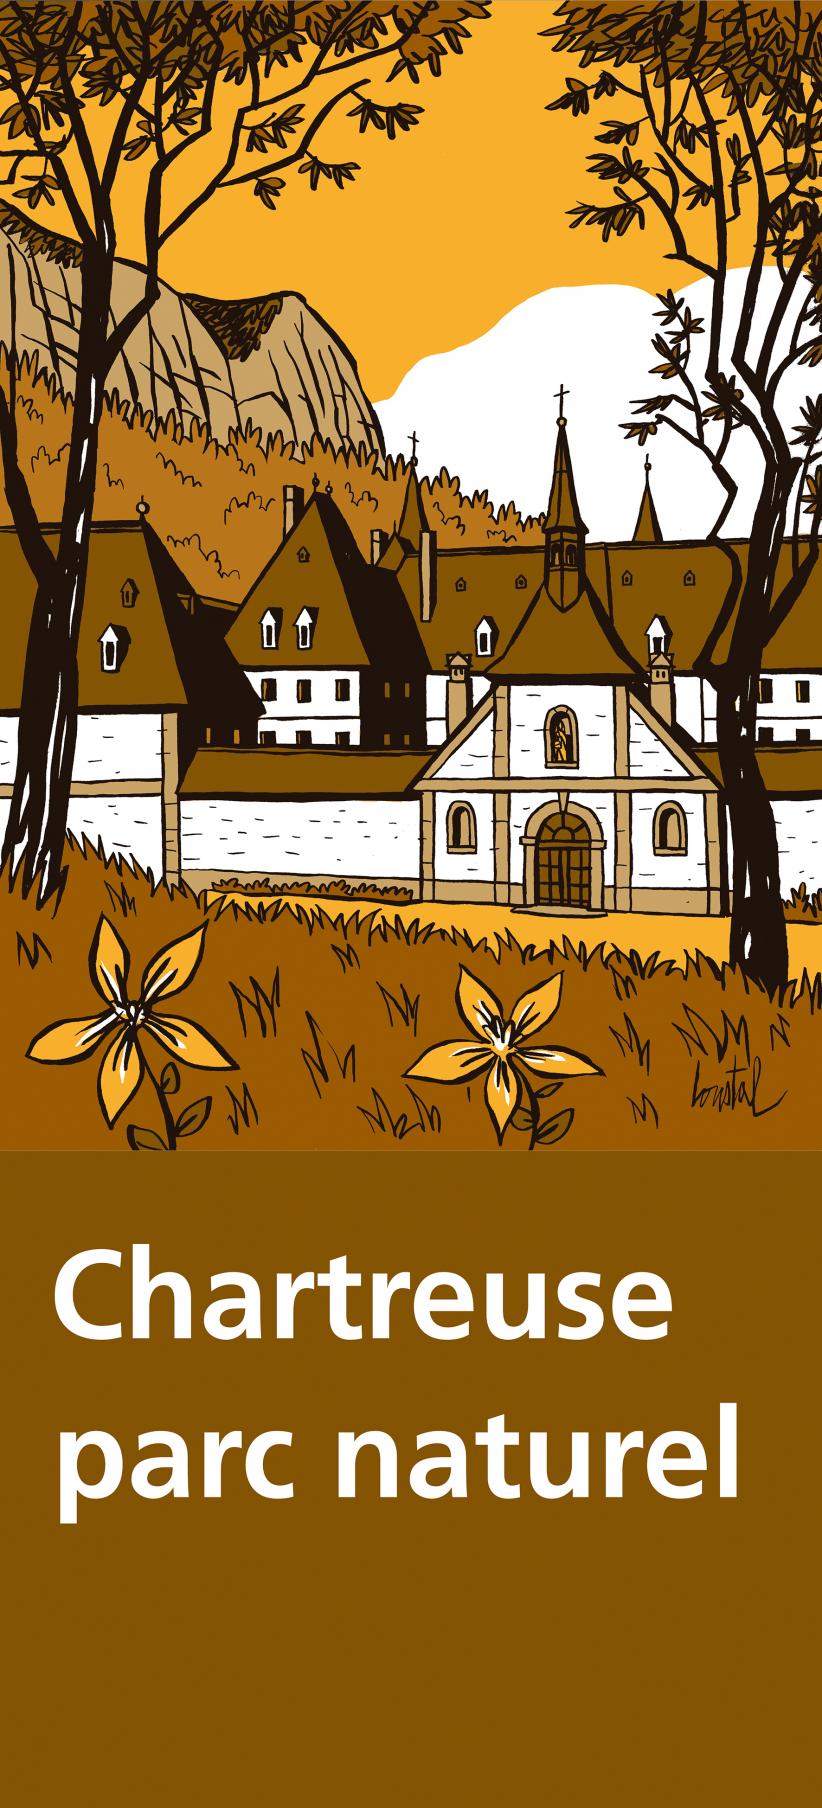 Panneau touristique de la Chartreuse